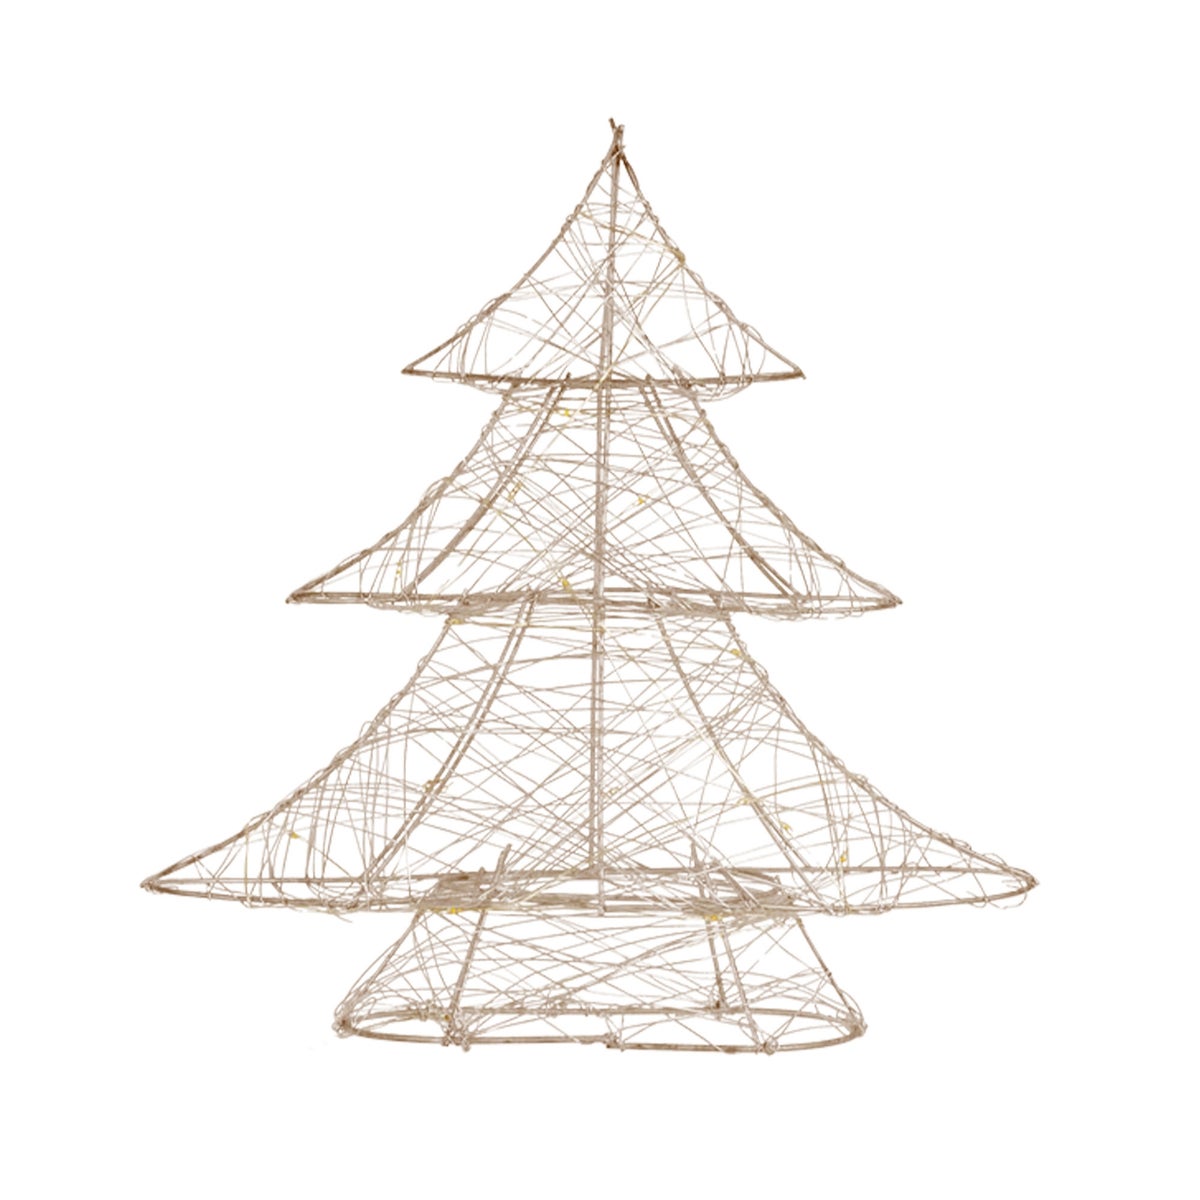 ECD Germany LED Deko Baum Weihnachten mit 20 warmweißen LEDs, 30 cm hoch, aus Metall, Gold, Weihnachtsbaum mit Beleuchtung &amp; Timer, Innen, batteriebetrieben, Lichterbaum Tanne stehend Weihnachtsdeko